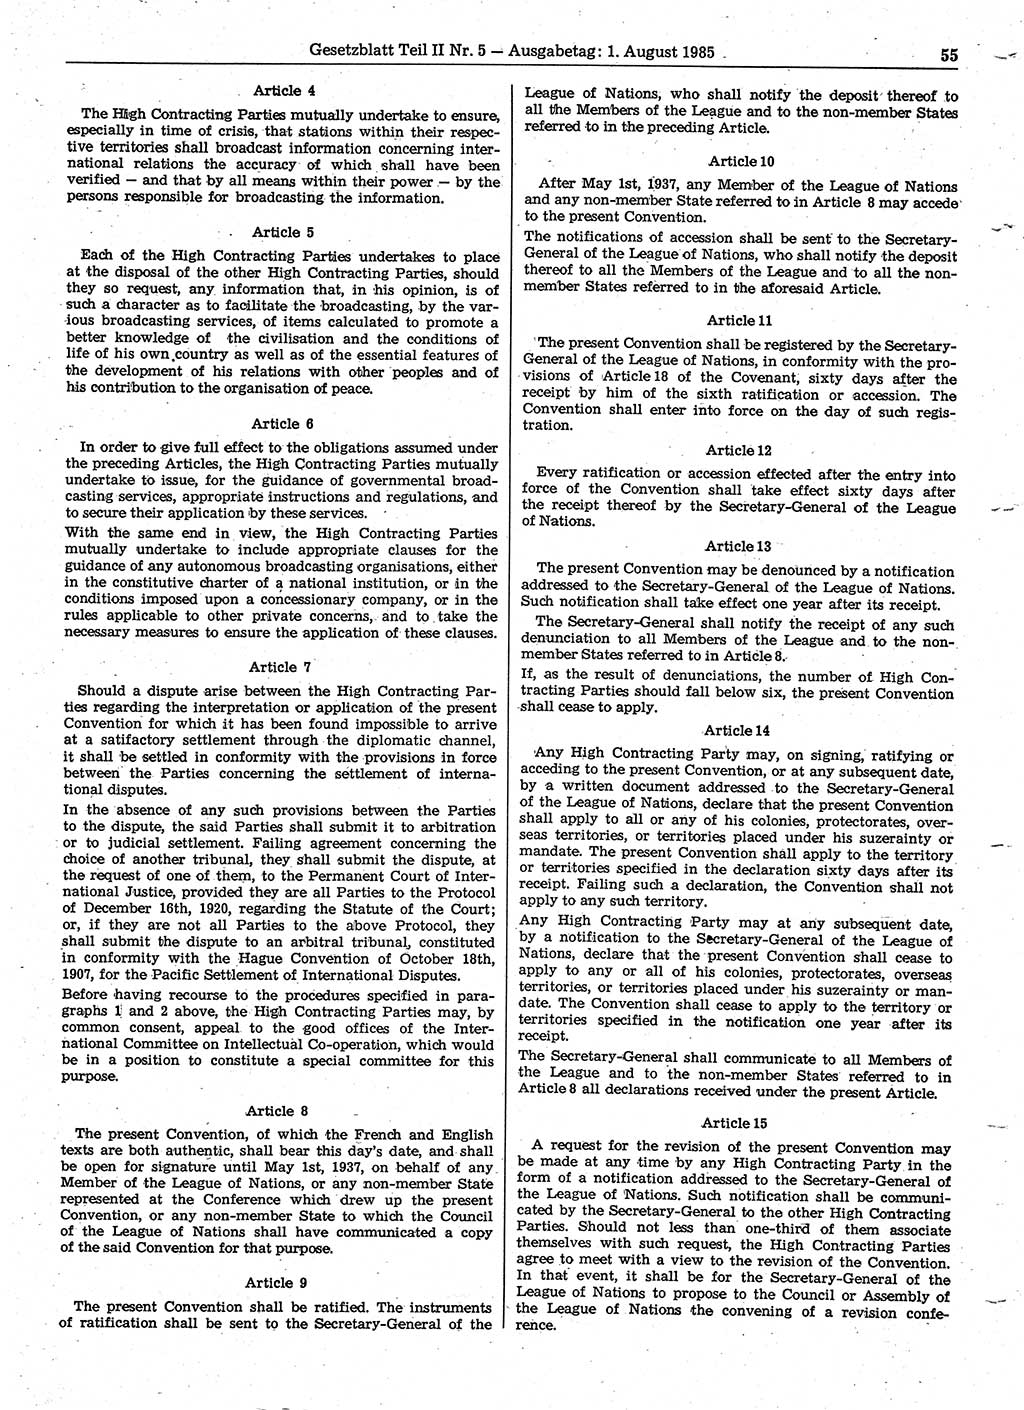 Gesetzblatt (GBl.) der Deutschen Demokratischen Republik (DDR) Teil ⅠⅠ 1985, Seite 55 (GBl. DDR ⅠⅠ 1985, S. 55)